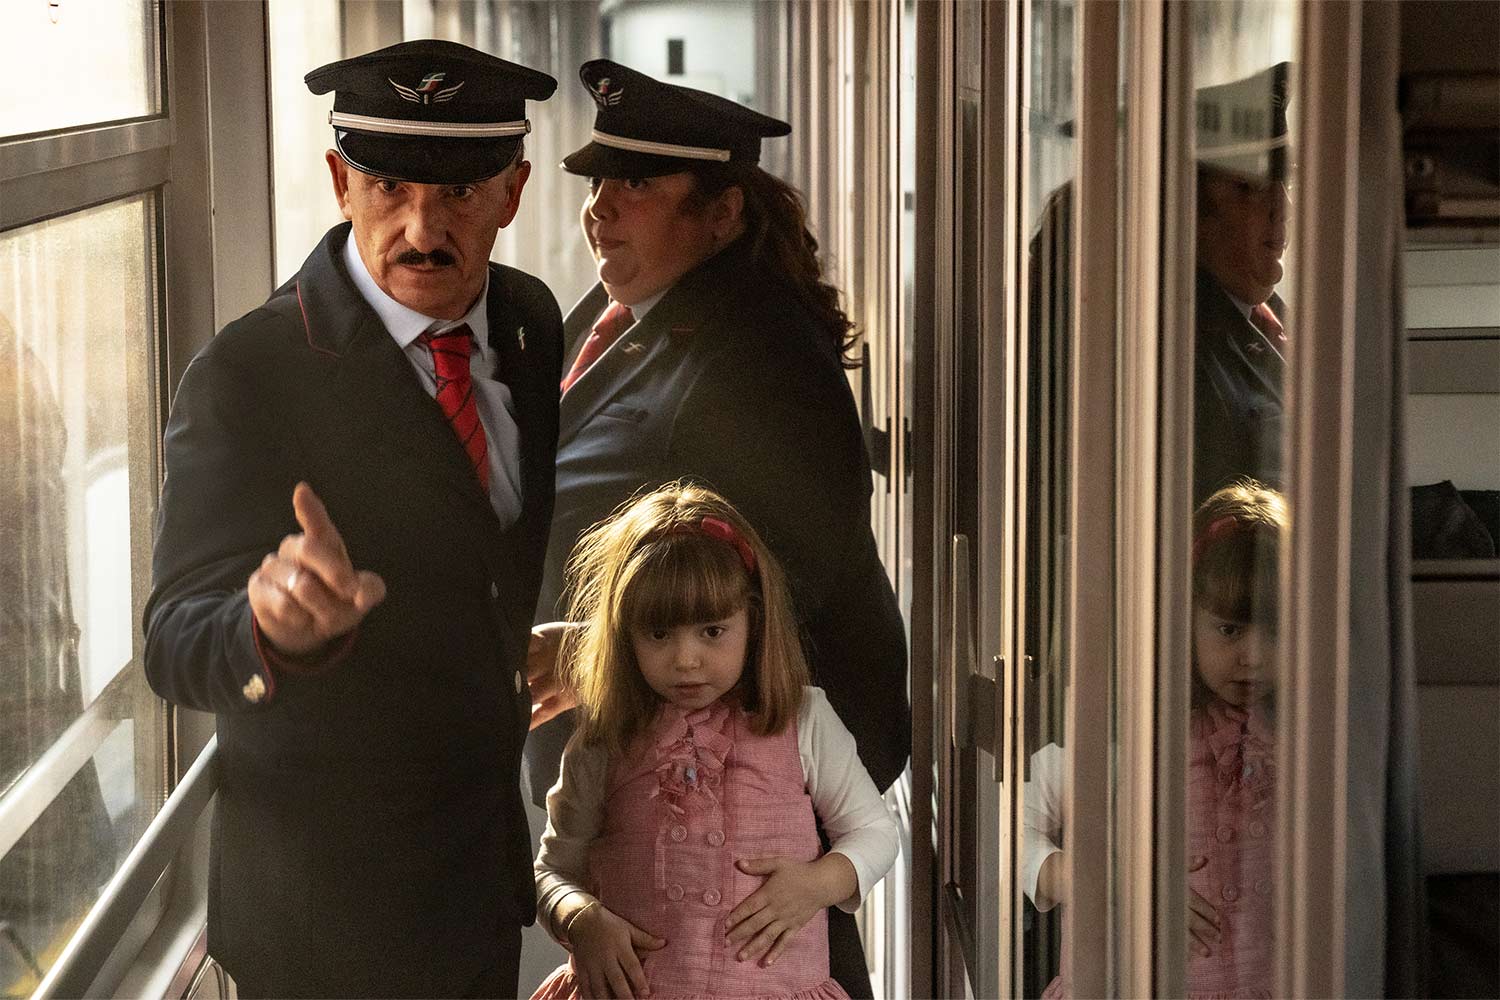 Carlo Buccirosso, Viviana Cangiano e Irene Koka sul set del film "Tutti a bordo!" di Luca Miniero ©Gianni Fiorito